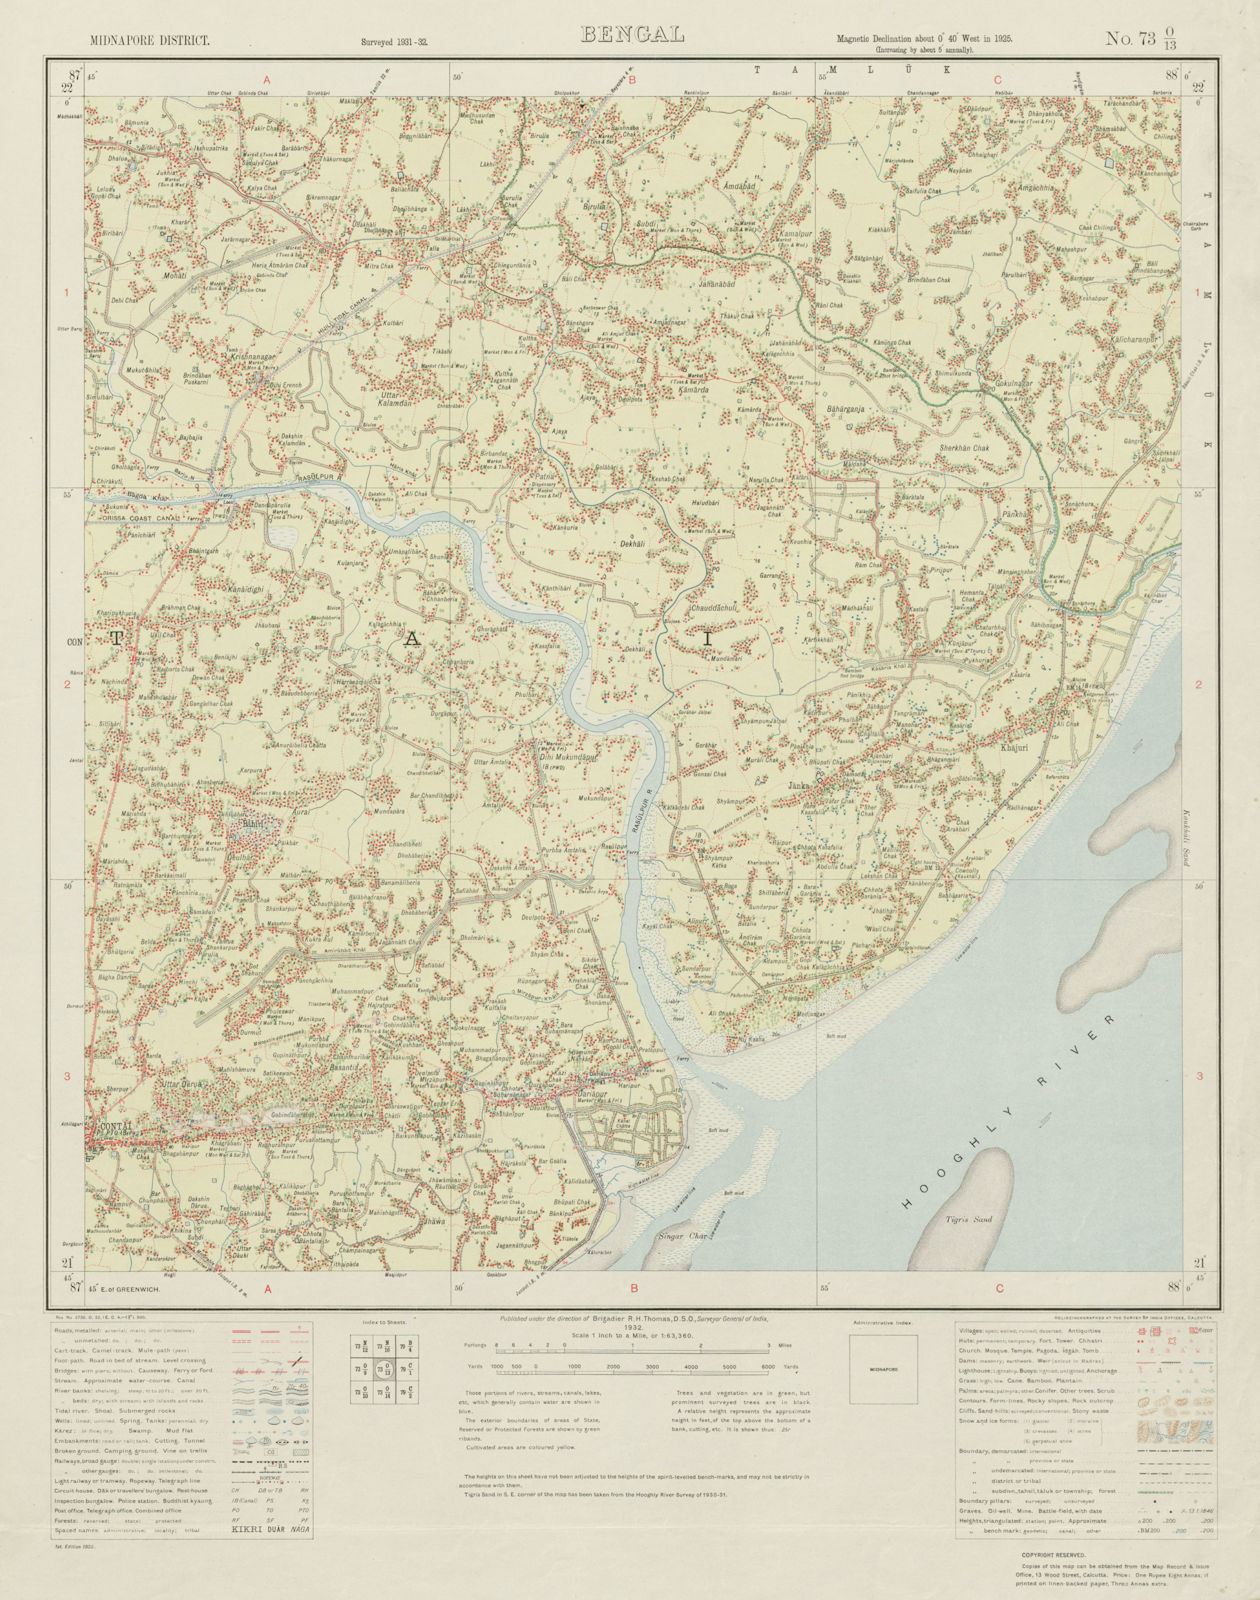 SURVEY OF INDIA 73 O/13 West Bengal Contai Henria Basantia Kasaria Boga 1932 map